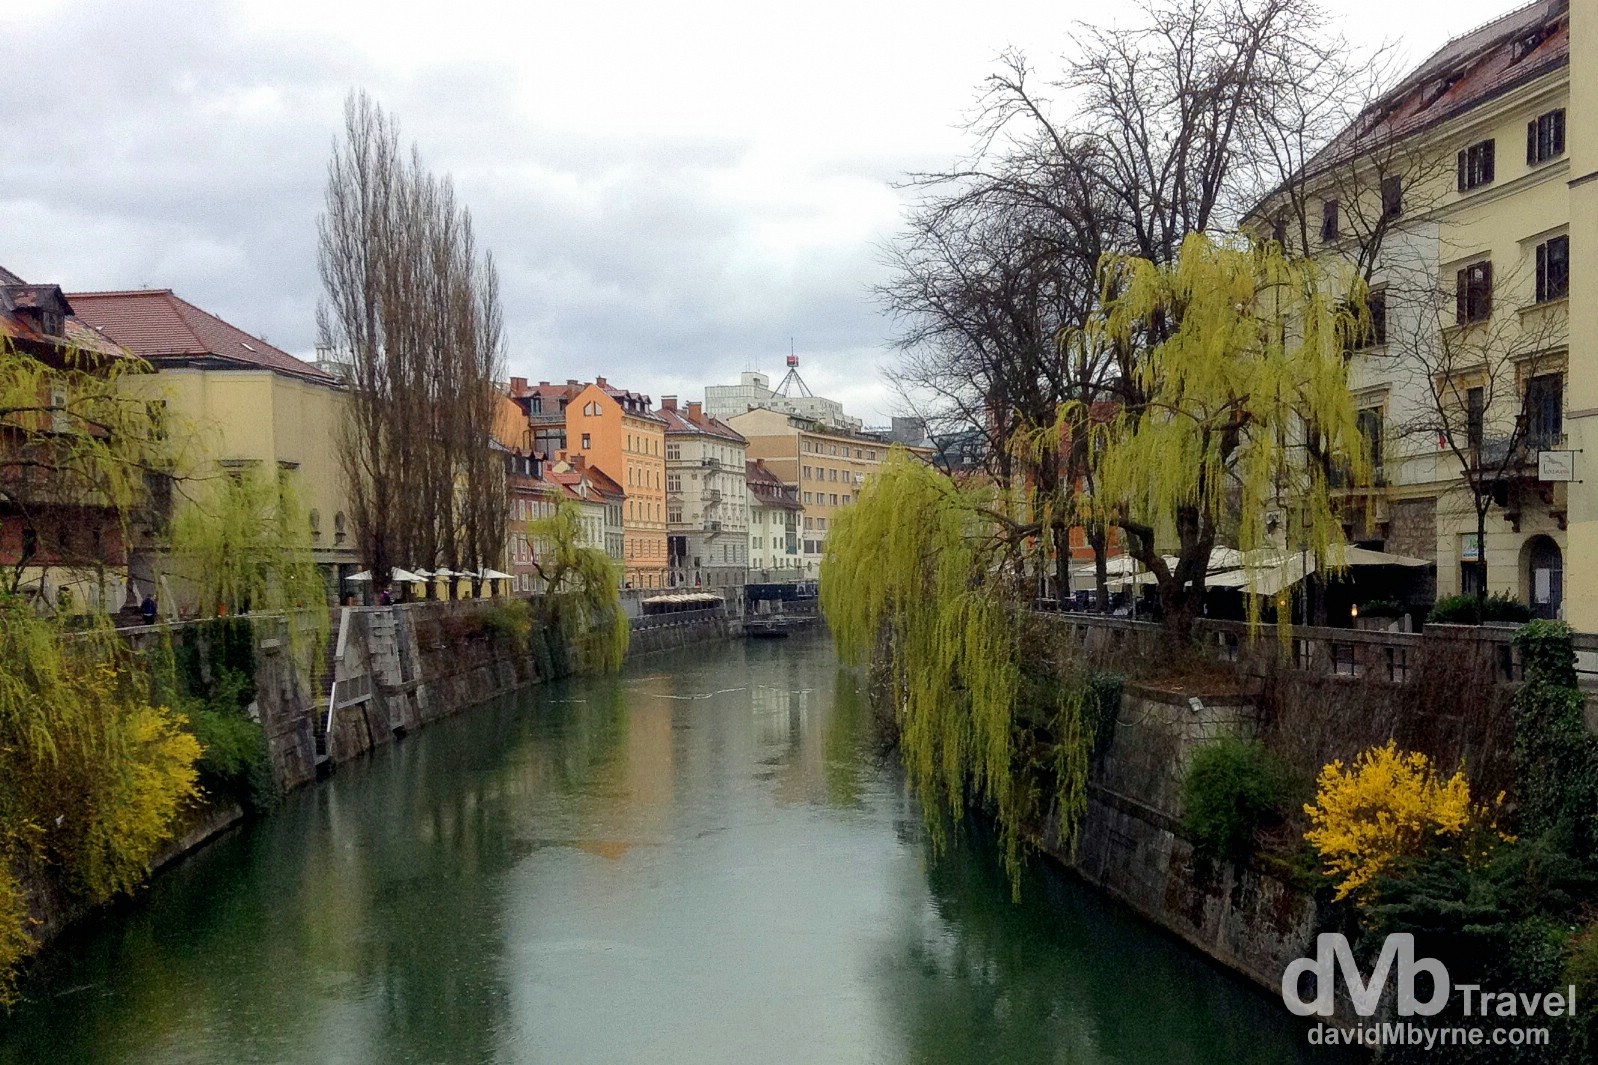 The Ljubljanica river in Ljubljana, Slovenia. March 23rd, 2014.